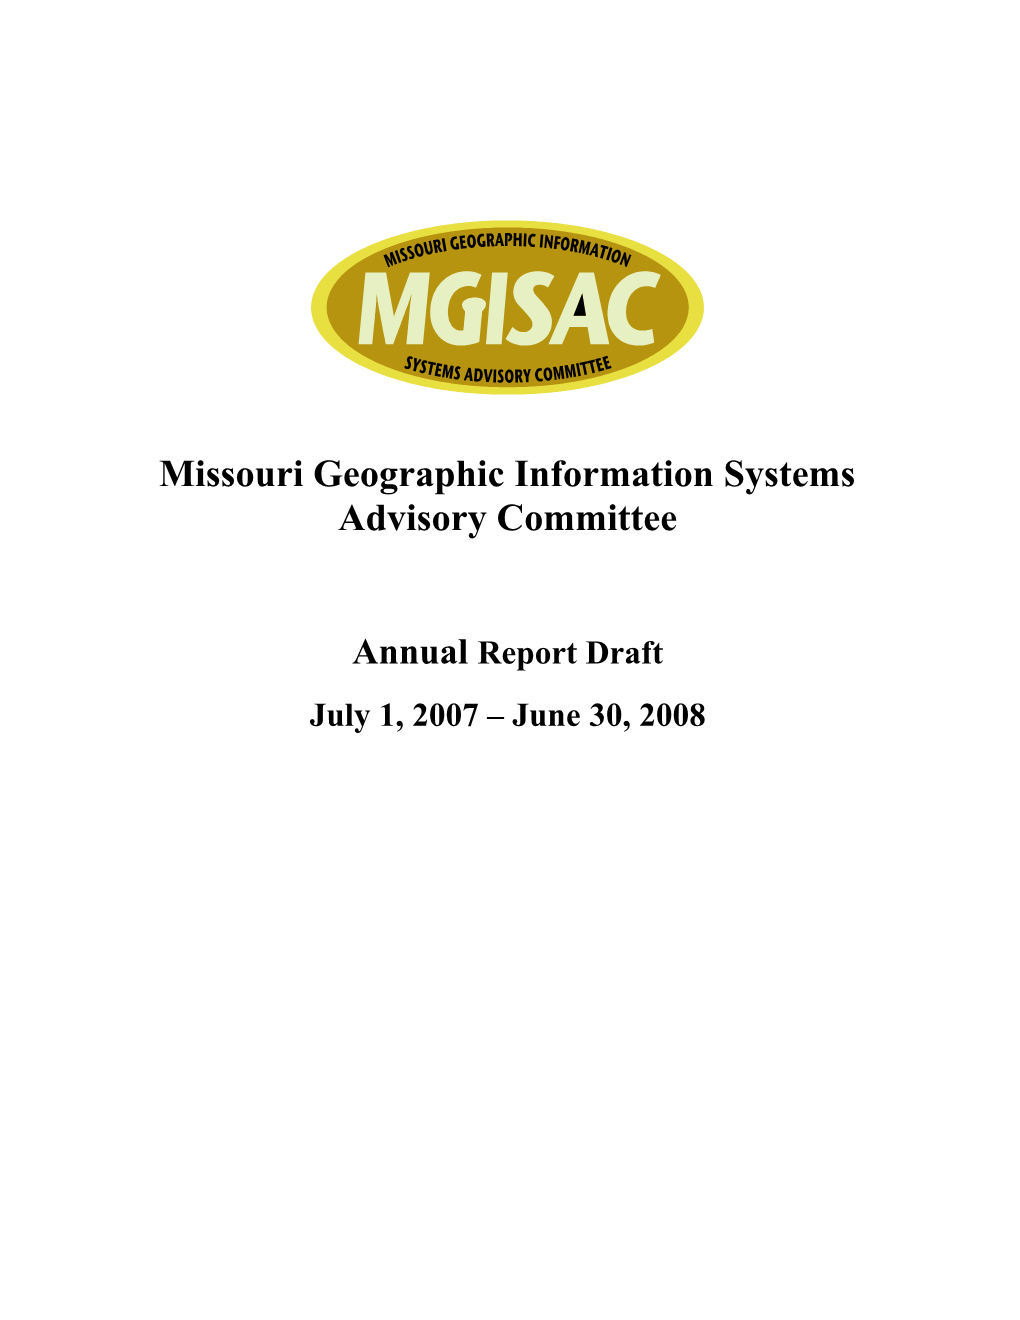 Missouri GIS Advisory Committee Agenda July 12, 2007